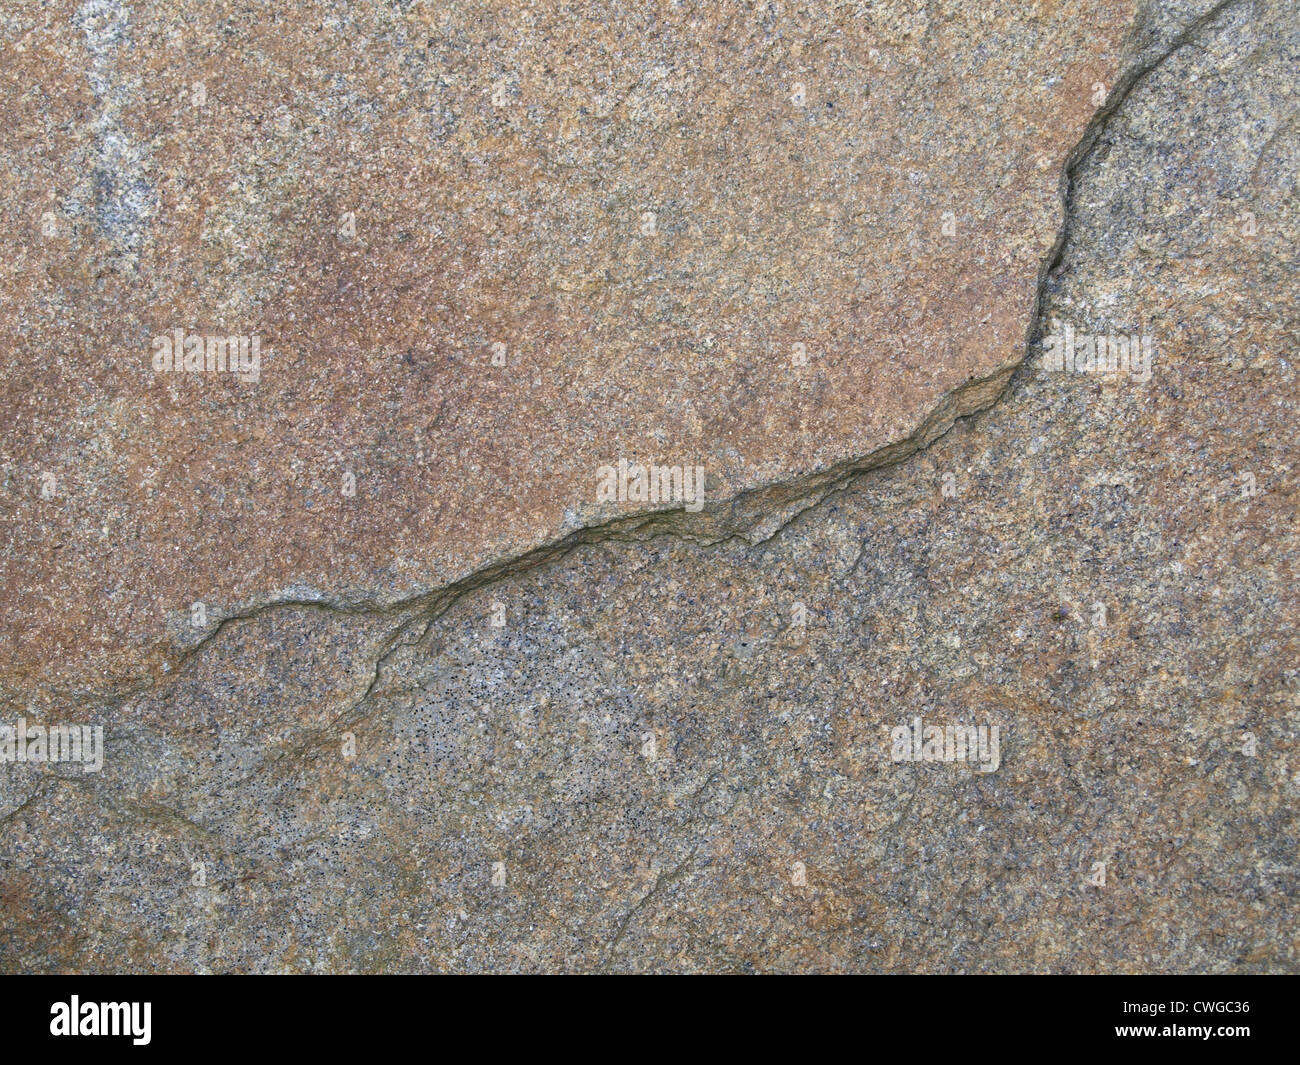 rock textures / Steintexturen Stock Photo